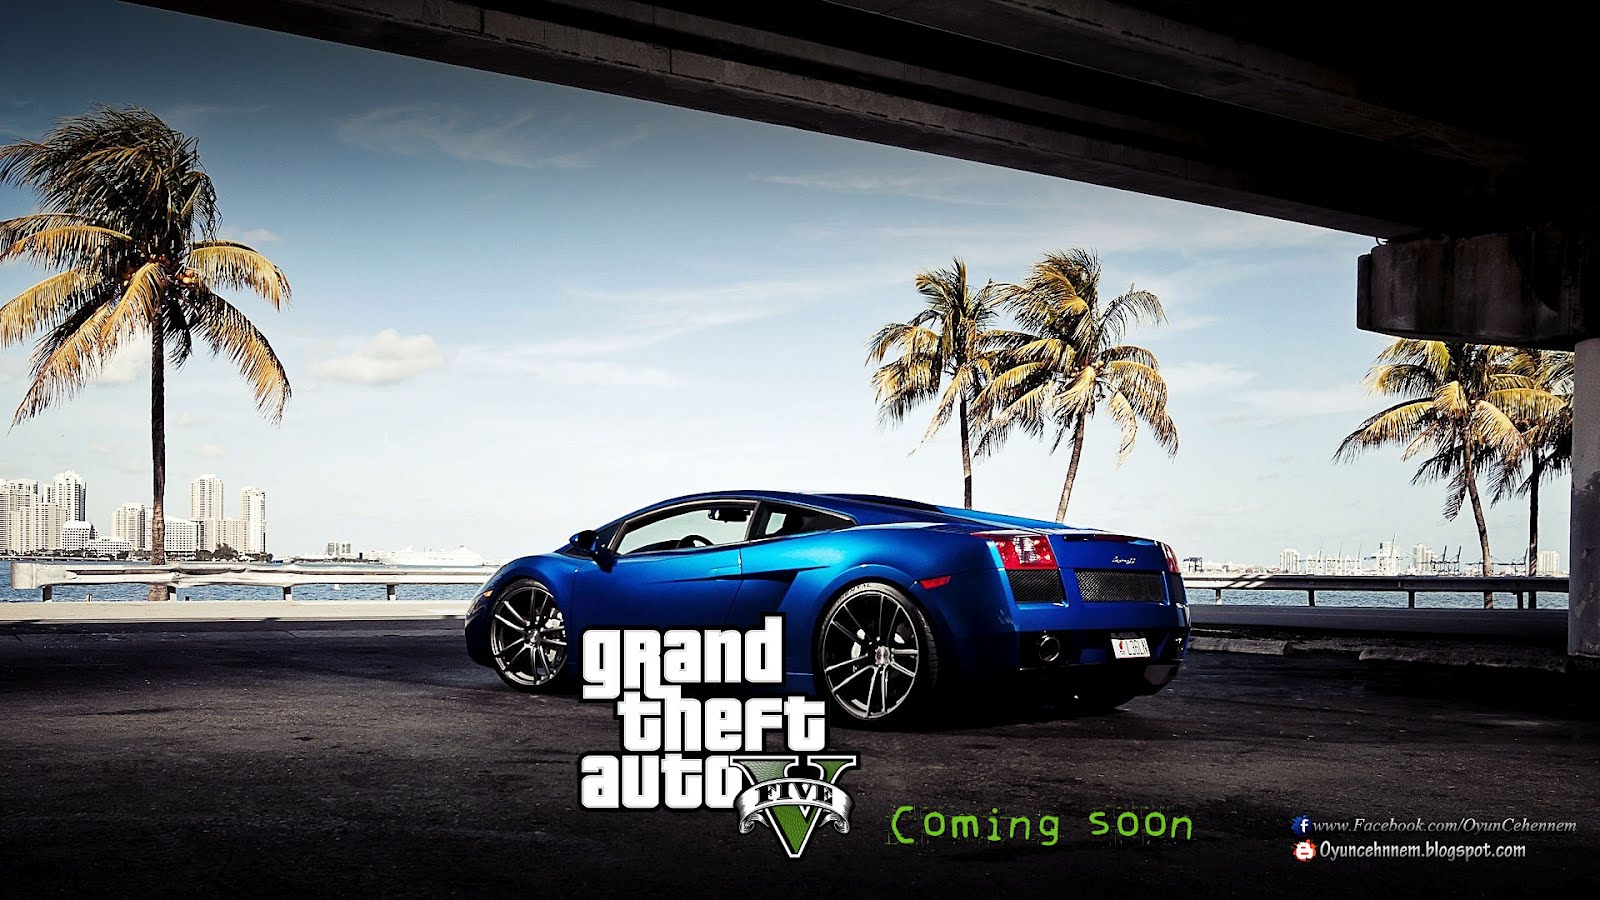 Gta HD Wallpaper Gta5 V Grand Theft Auto